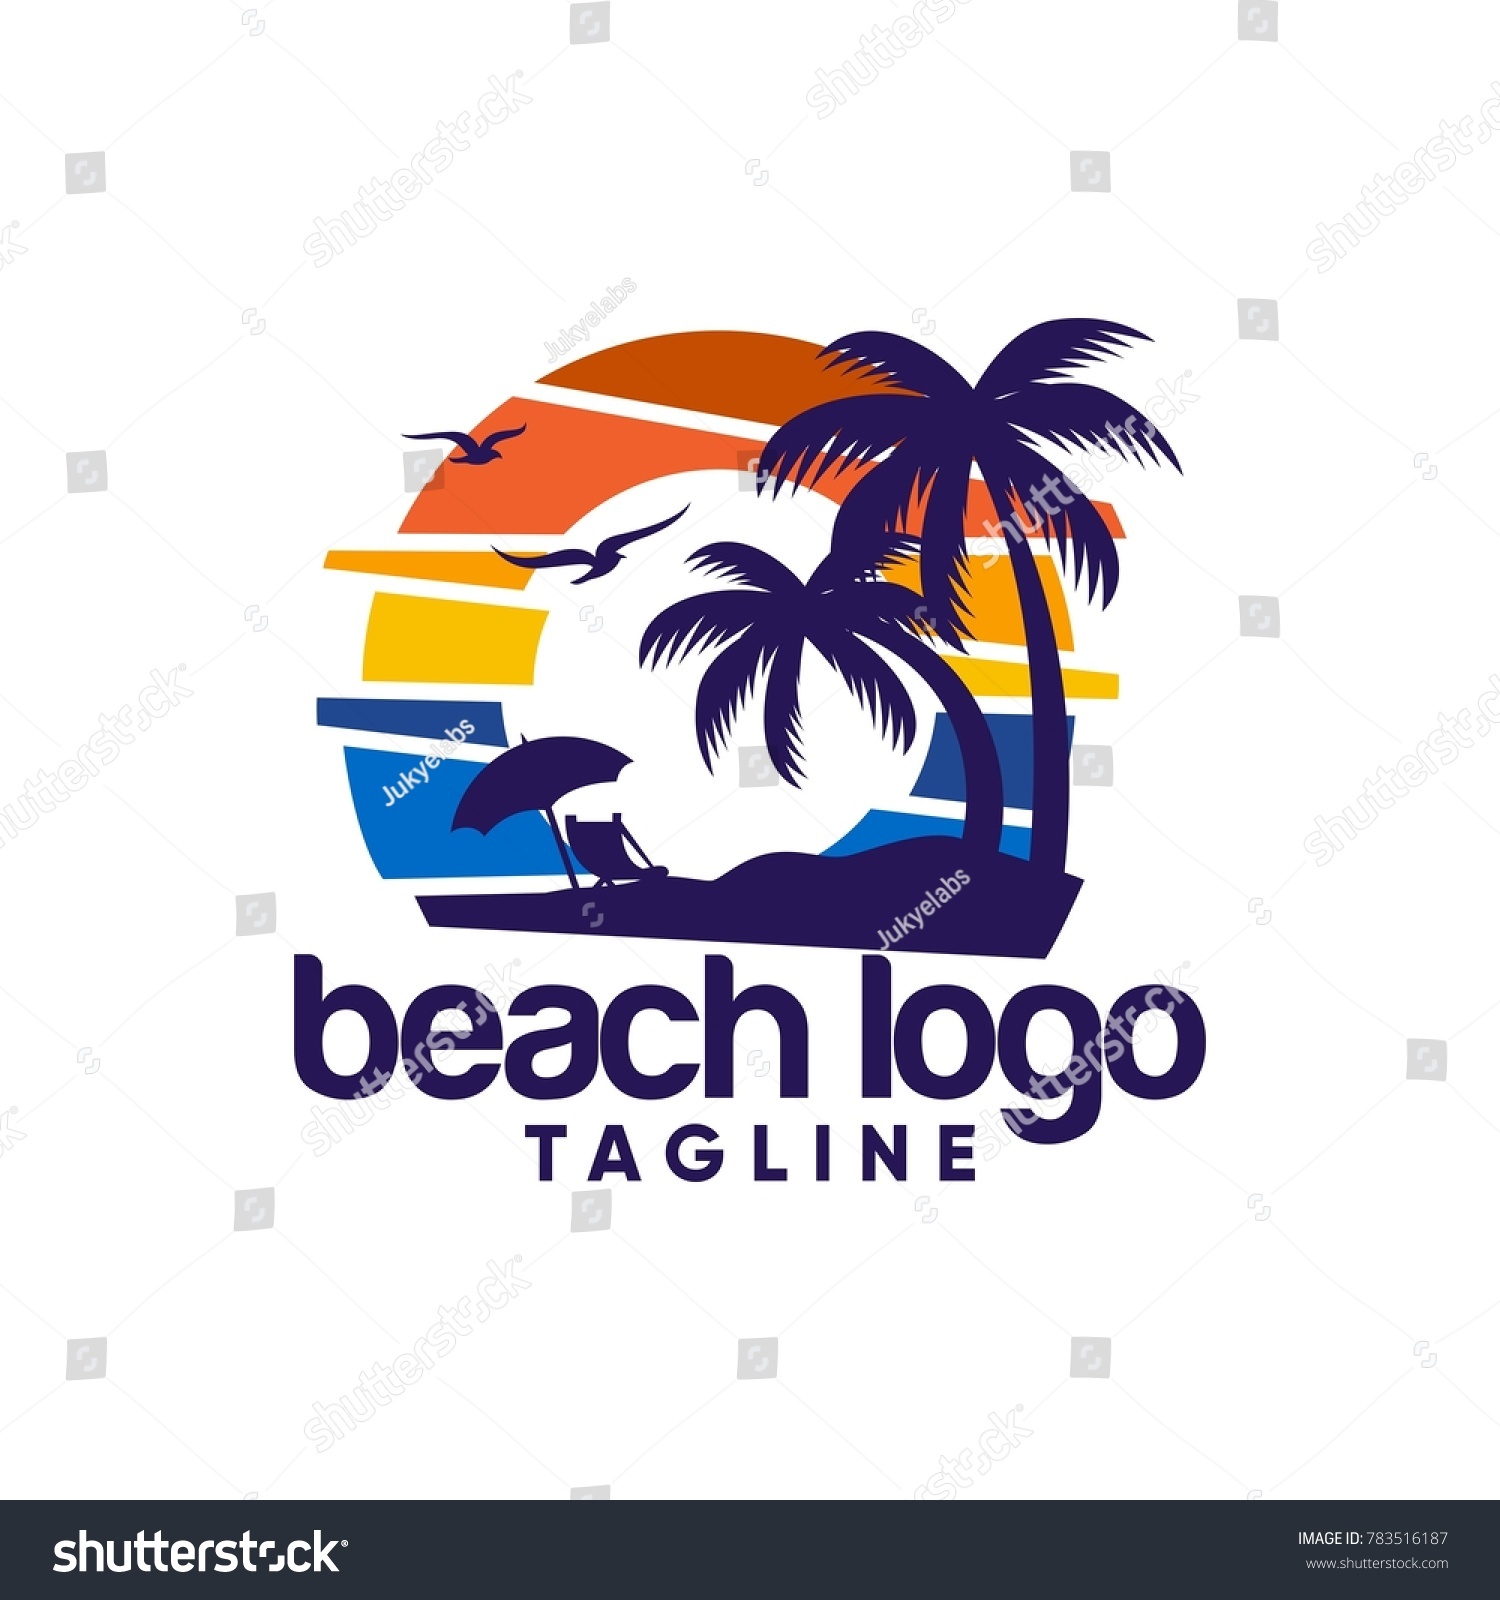 Beach Logo Design Vector Stock Vector (Royalty Free) 783516187 ...